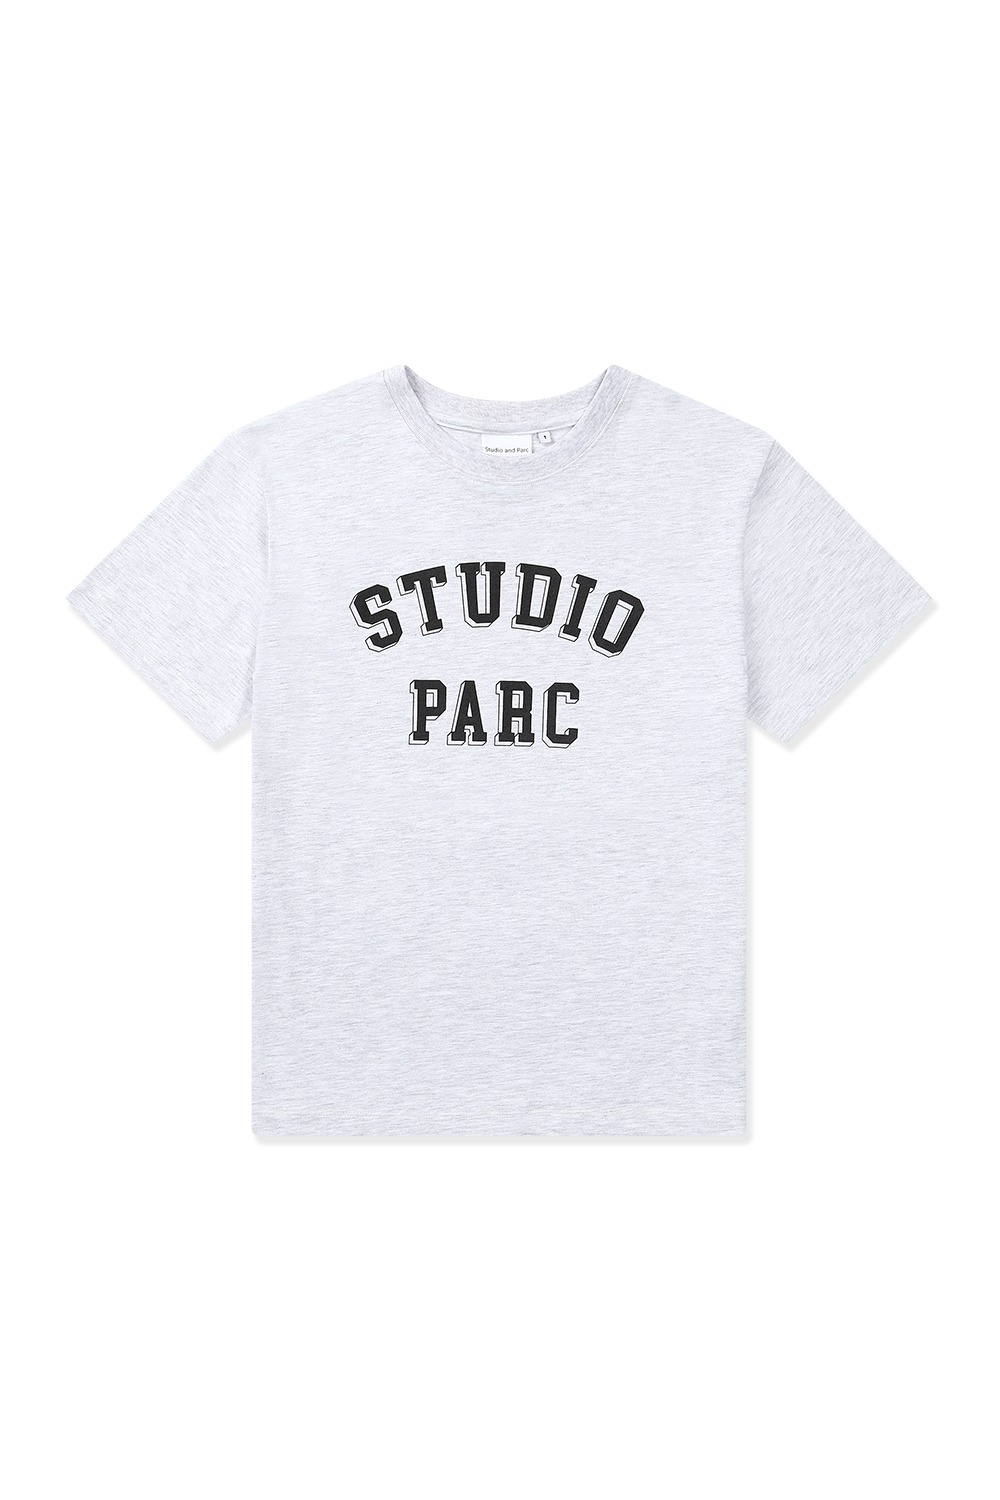 스튜디오파르크 티셔츠 (멜란지 화이트) - 리치즈 RICHEZ